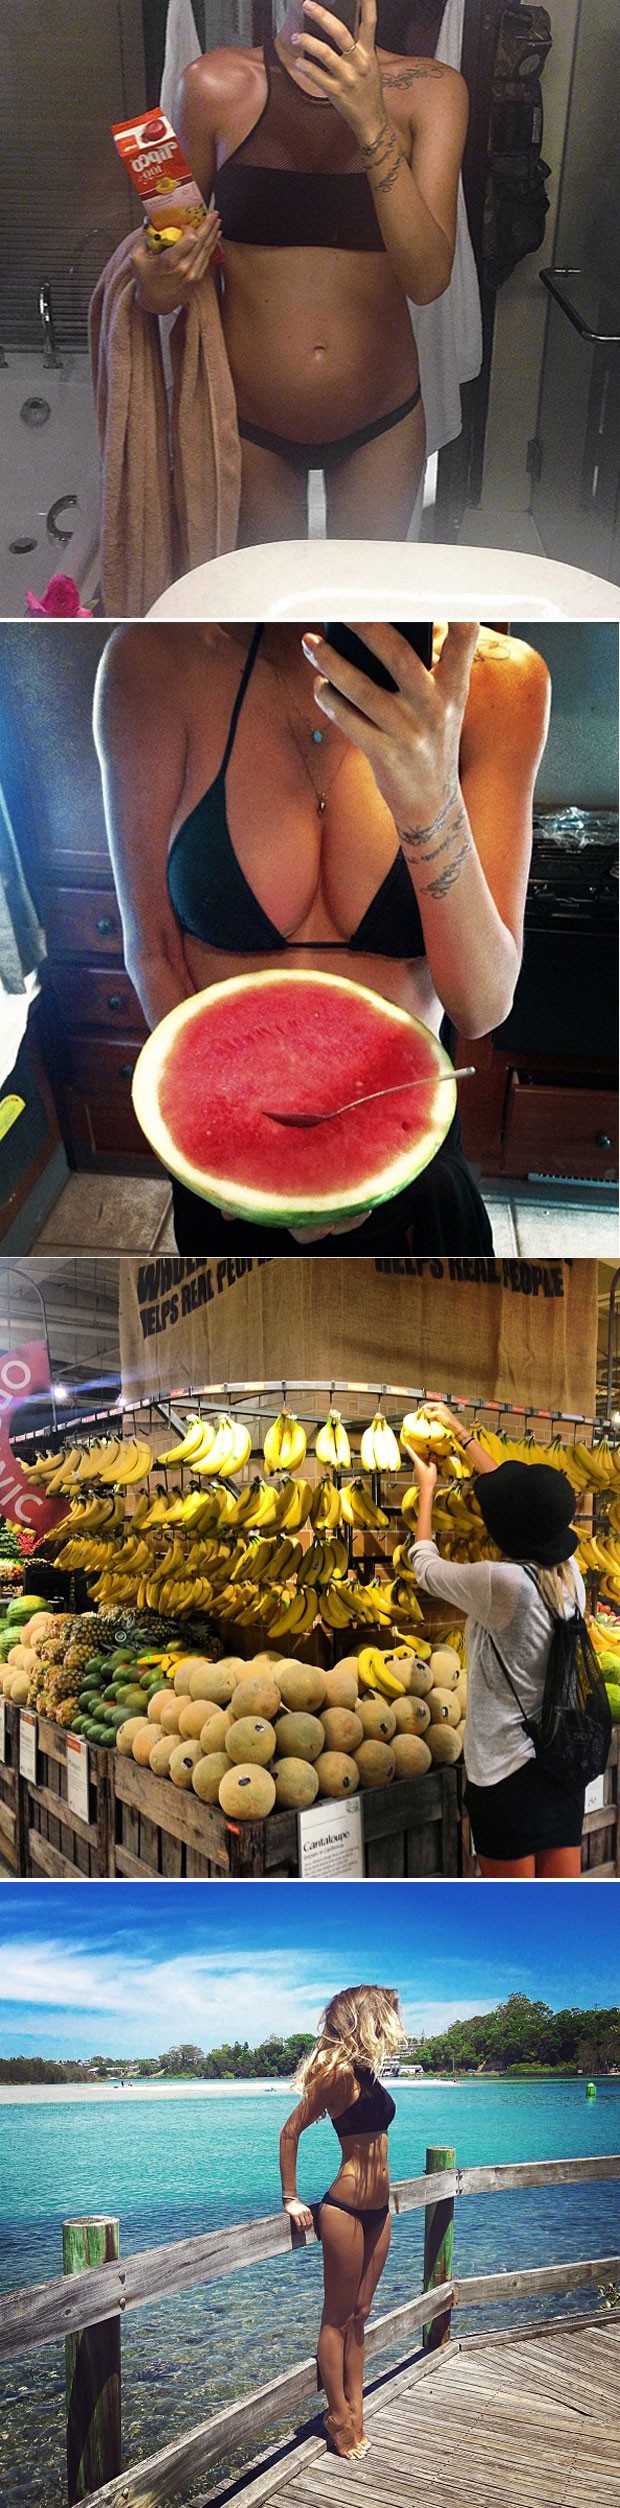 Imagens do Instagram de Loni mostram a jovem grávida, com uma melancia, comprendo bananas e antes da gravidez. (Foto: Reprodução/Instagram/lonijane)